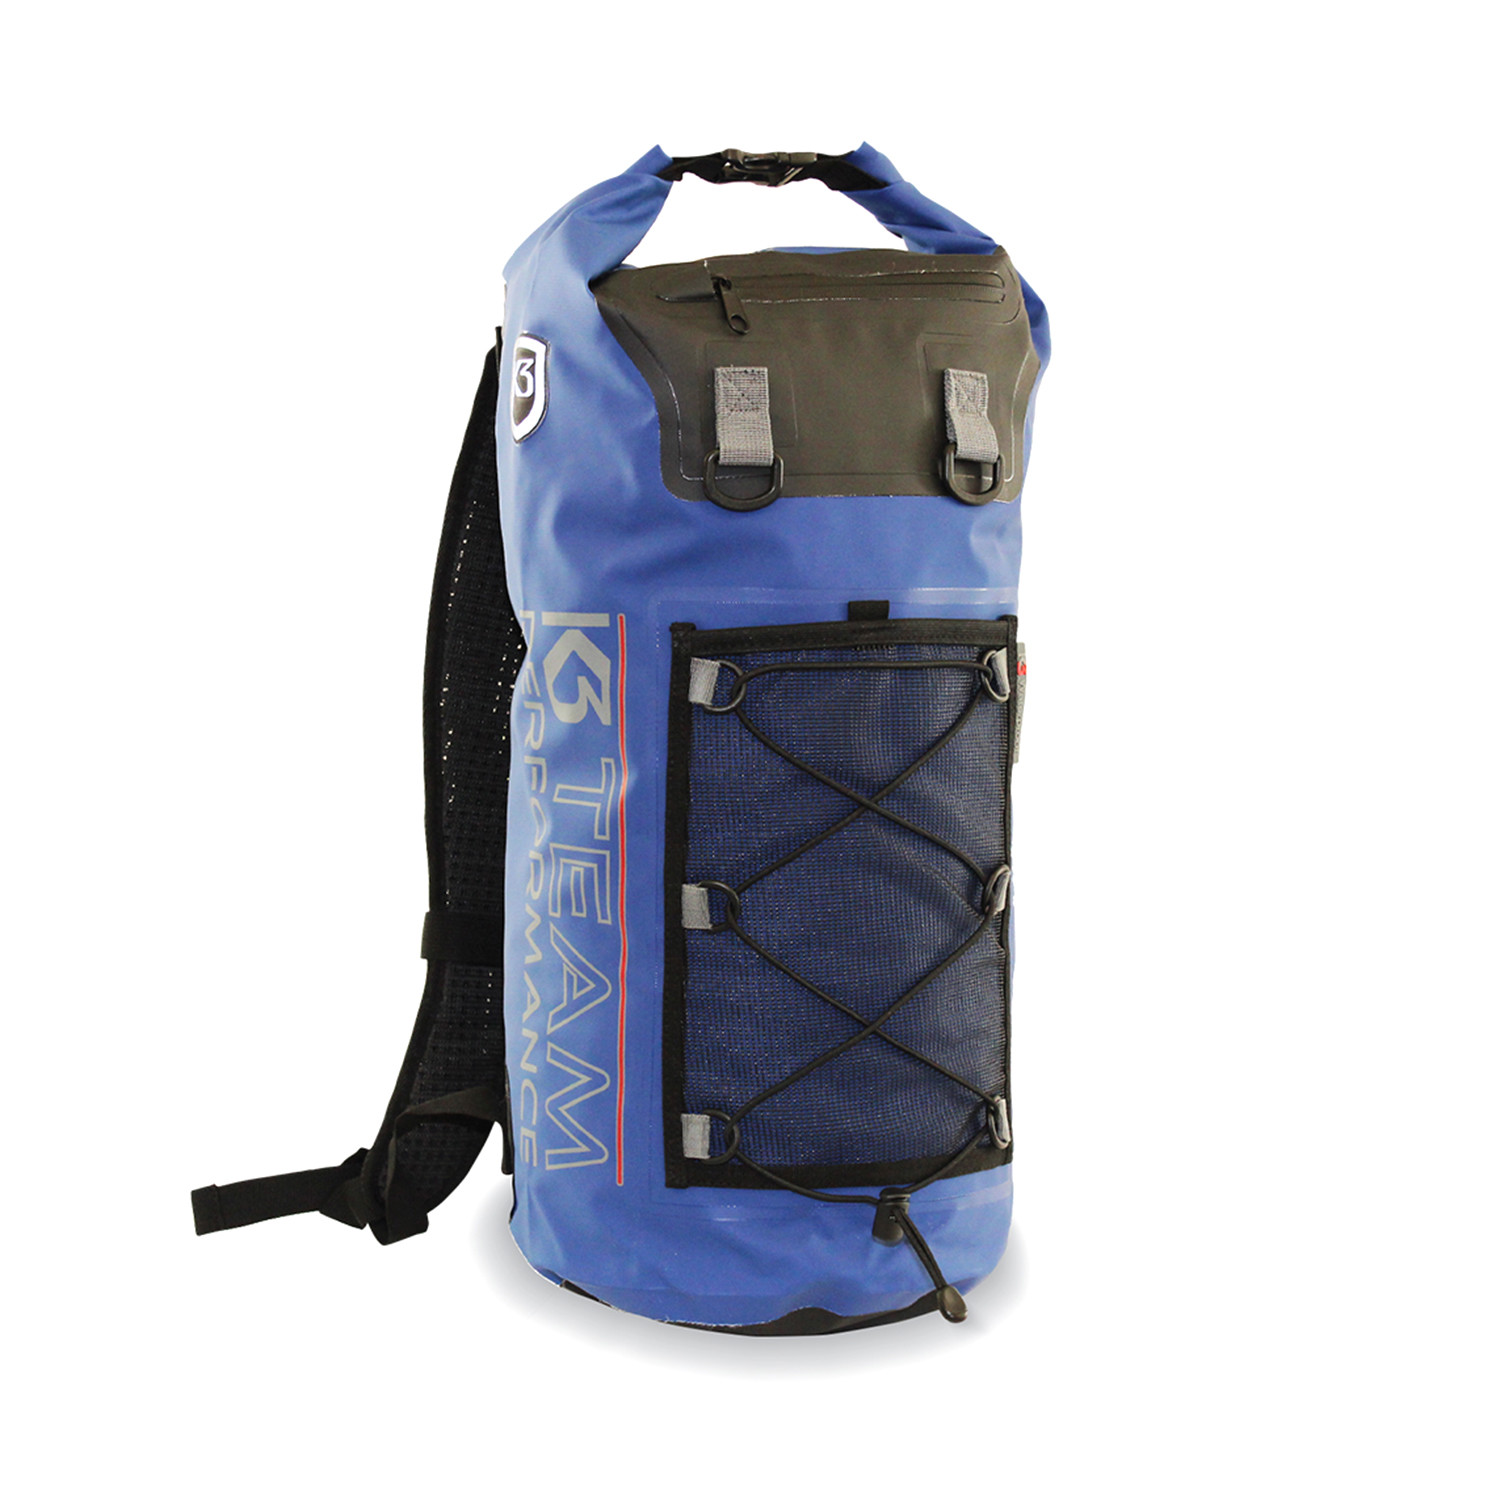 Pro-Tech Waterproof Backpack // 20 Liter (Black) - The K3 Company ...